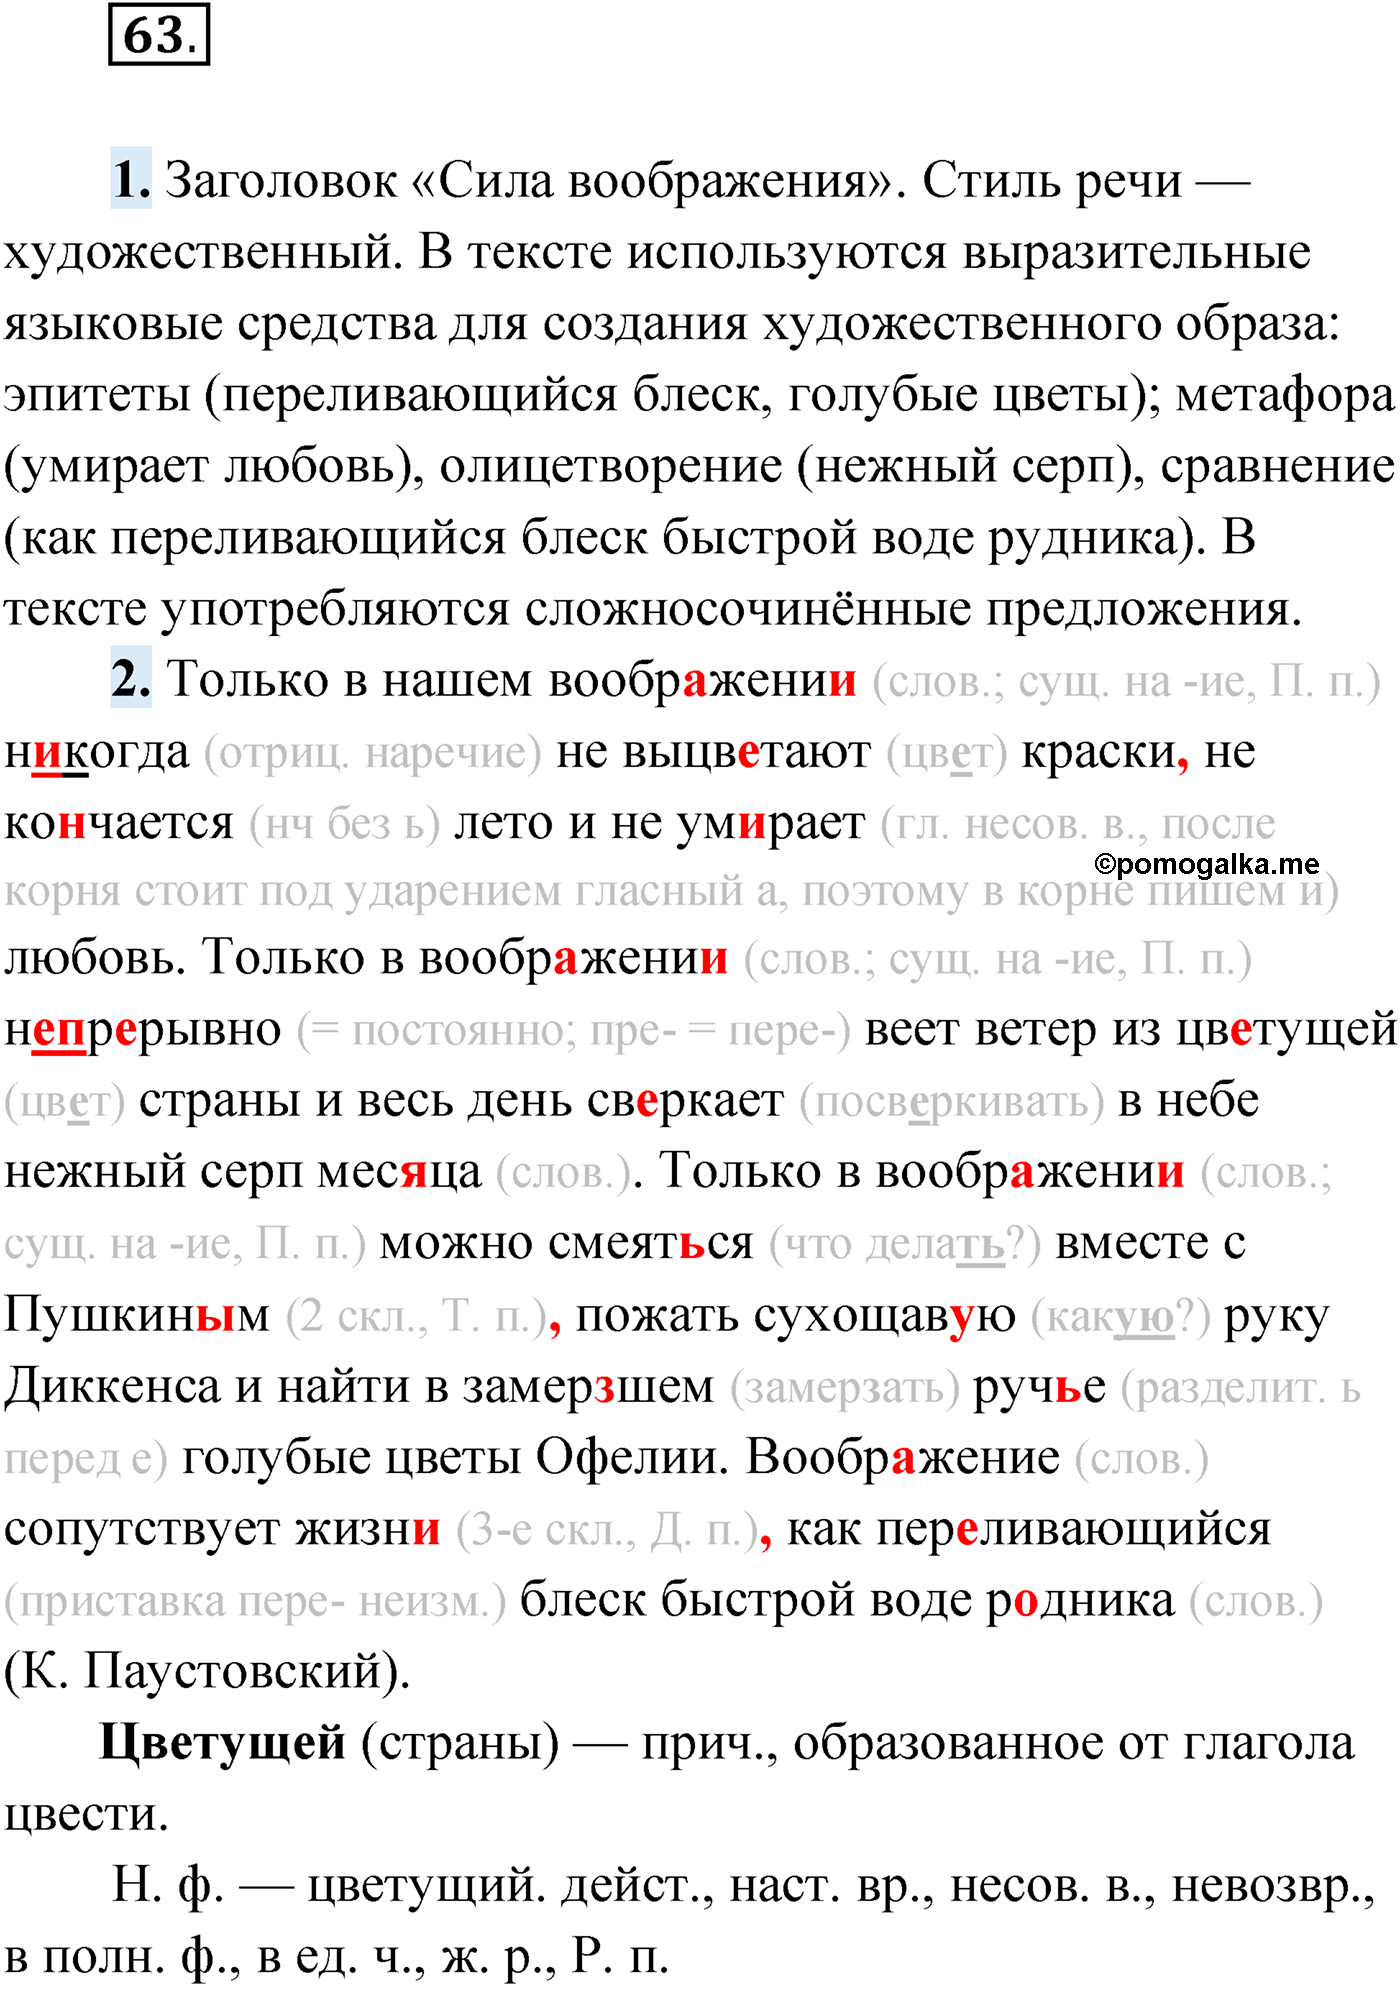 упражнение №63 русский язык 9 класс Мурина 2019 год